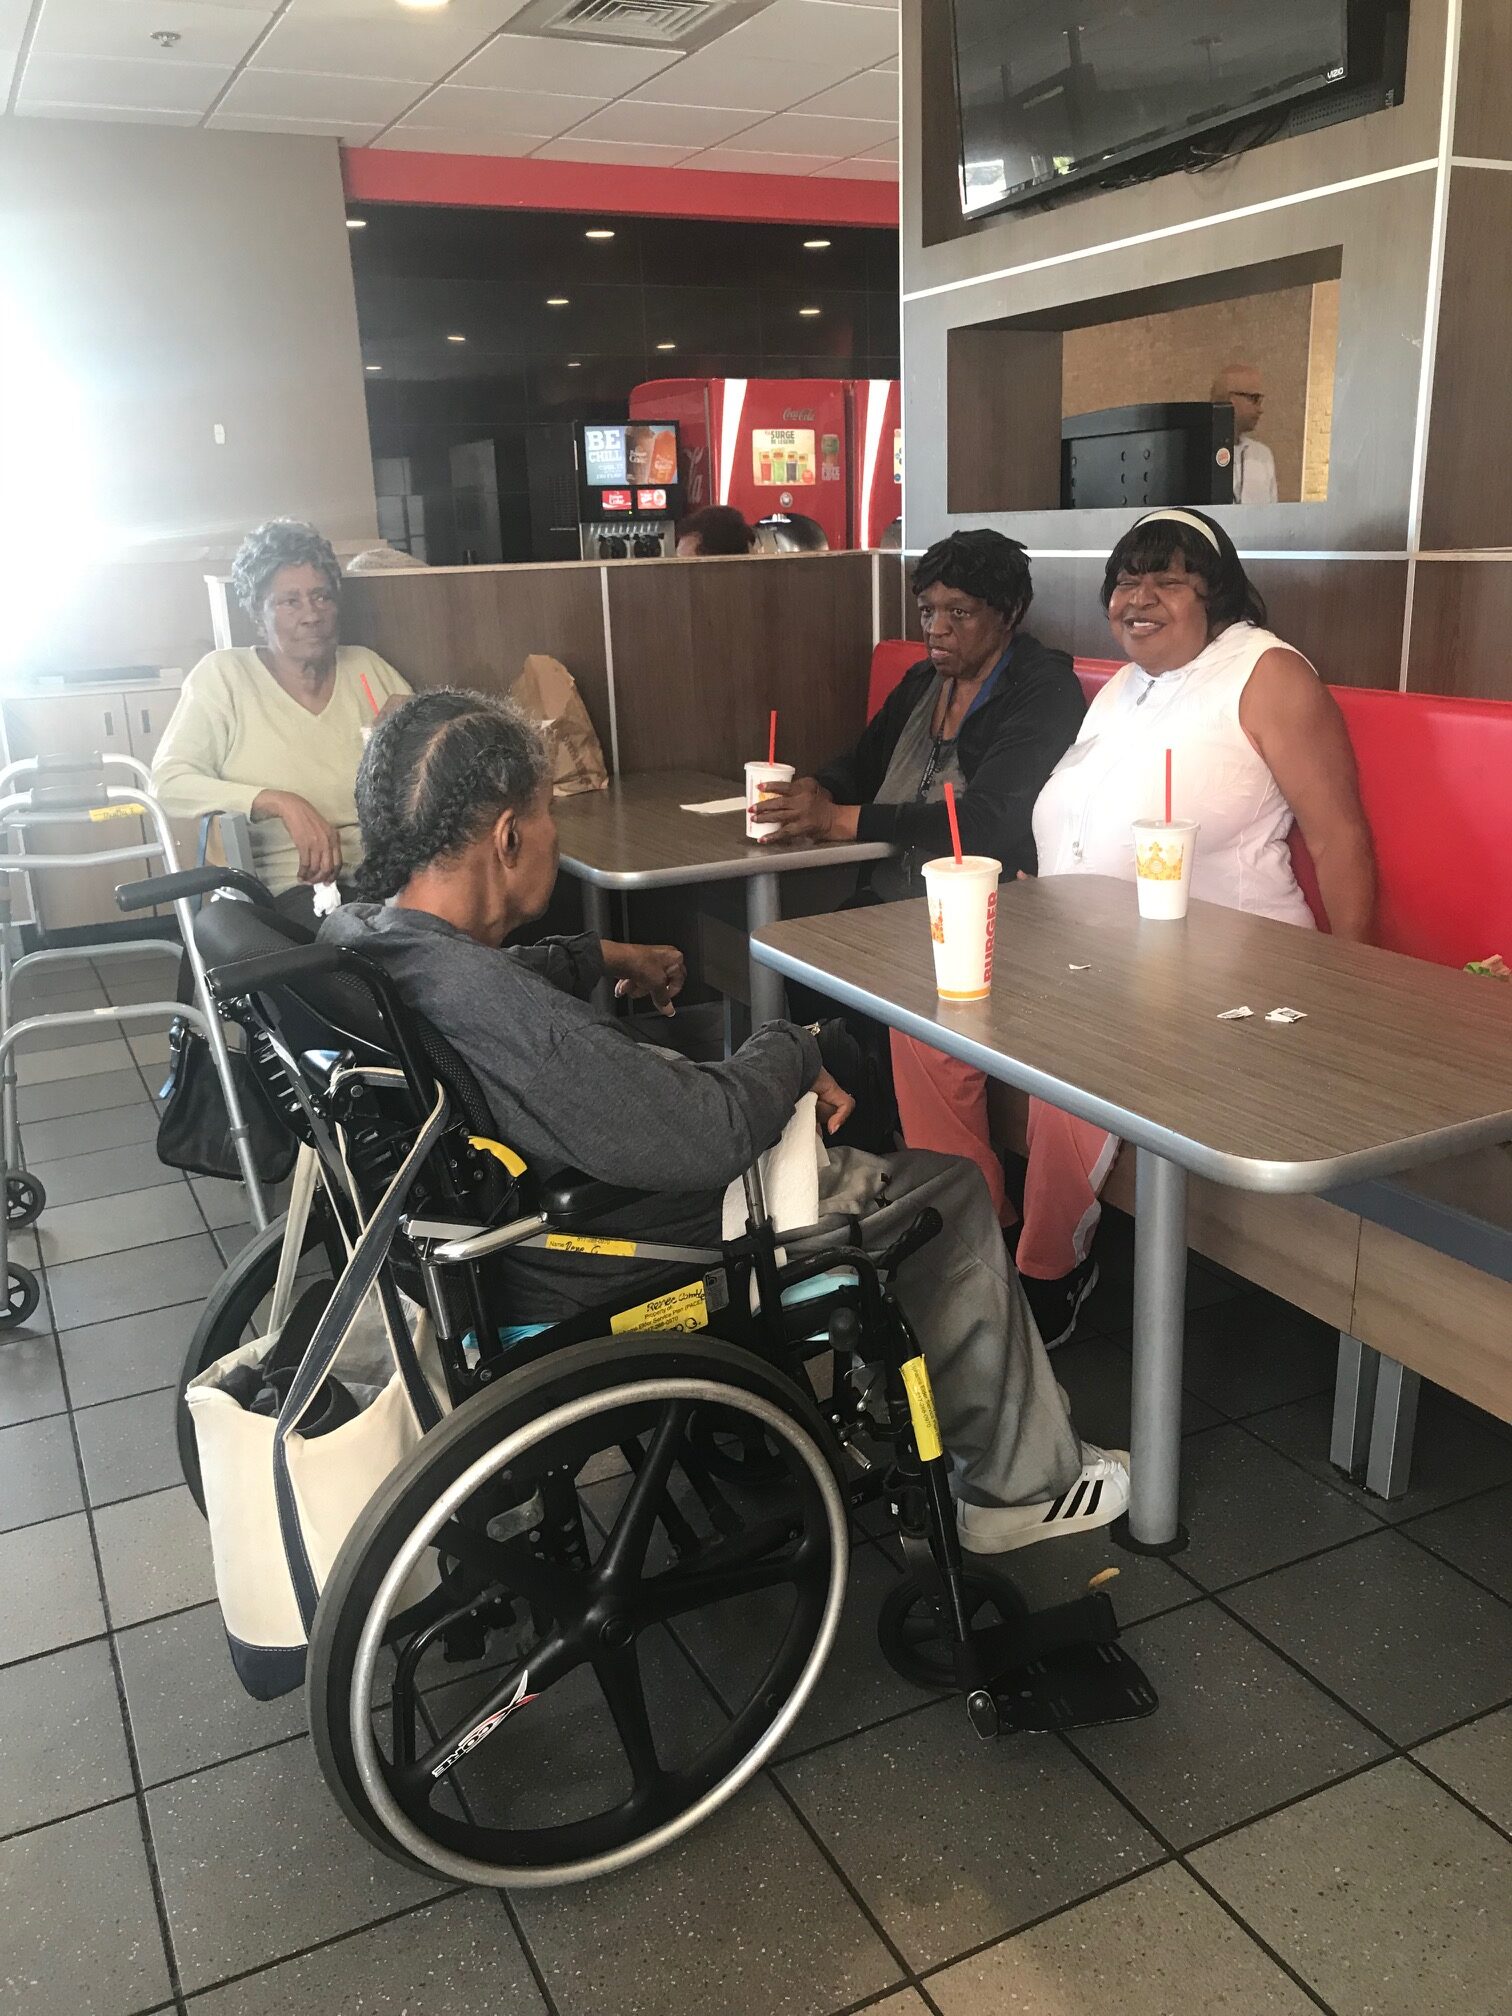 Participants enjoying lunch at Burger King